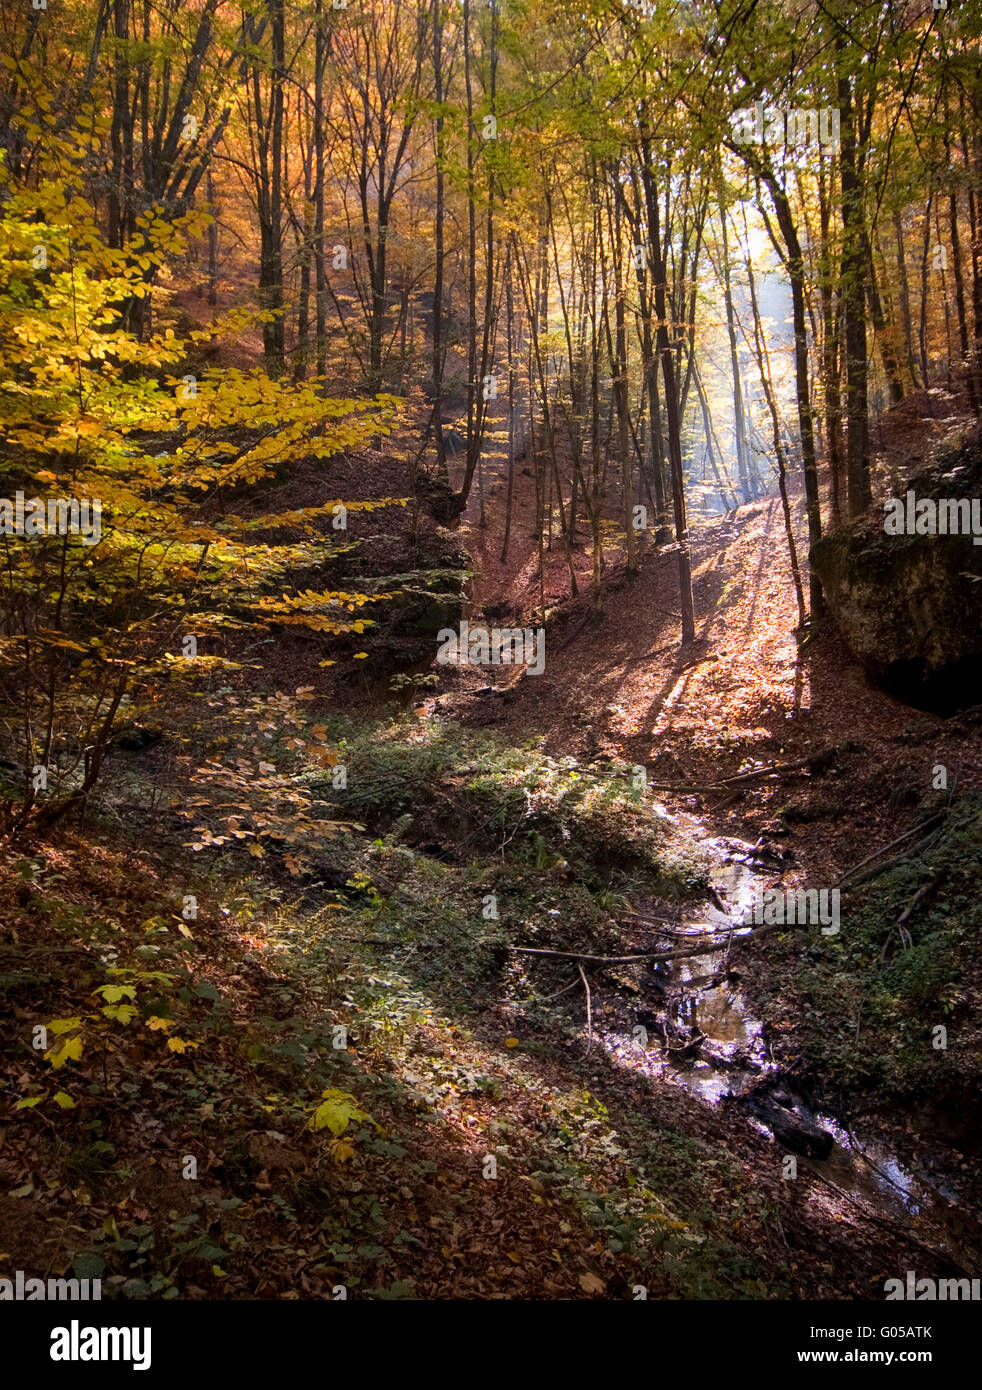 vivid autumn forest landscape Stock Photo